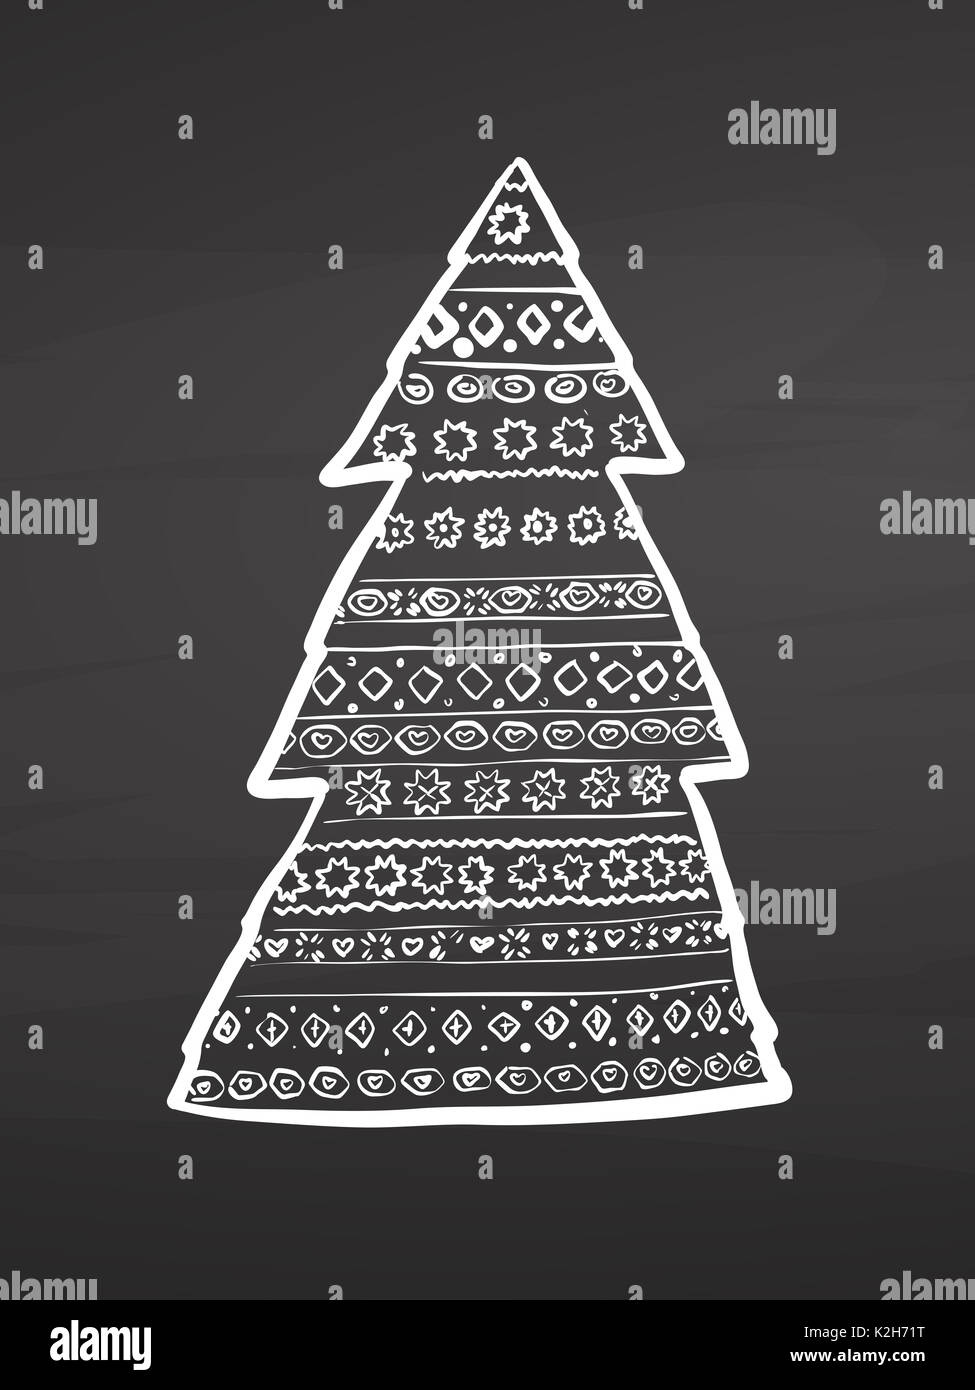 Weihnachtsbaum Muster am Schwarzen Brett, handdrawn Vektor Skizze, saubere Konturen, Vintage Style Tafel. Stockfoto